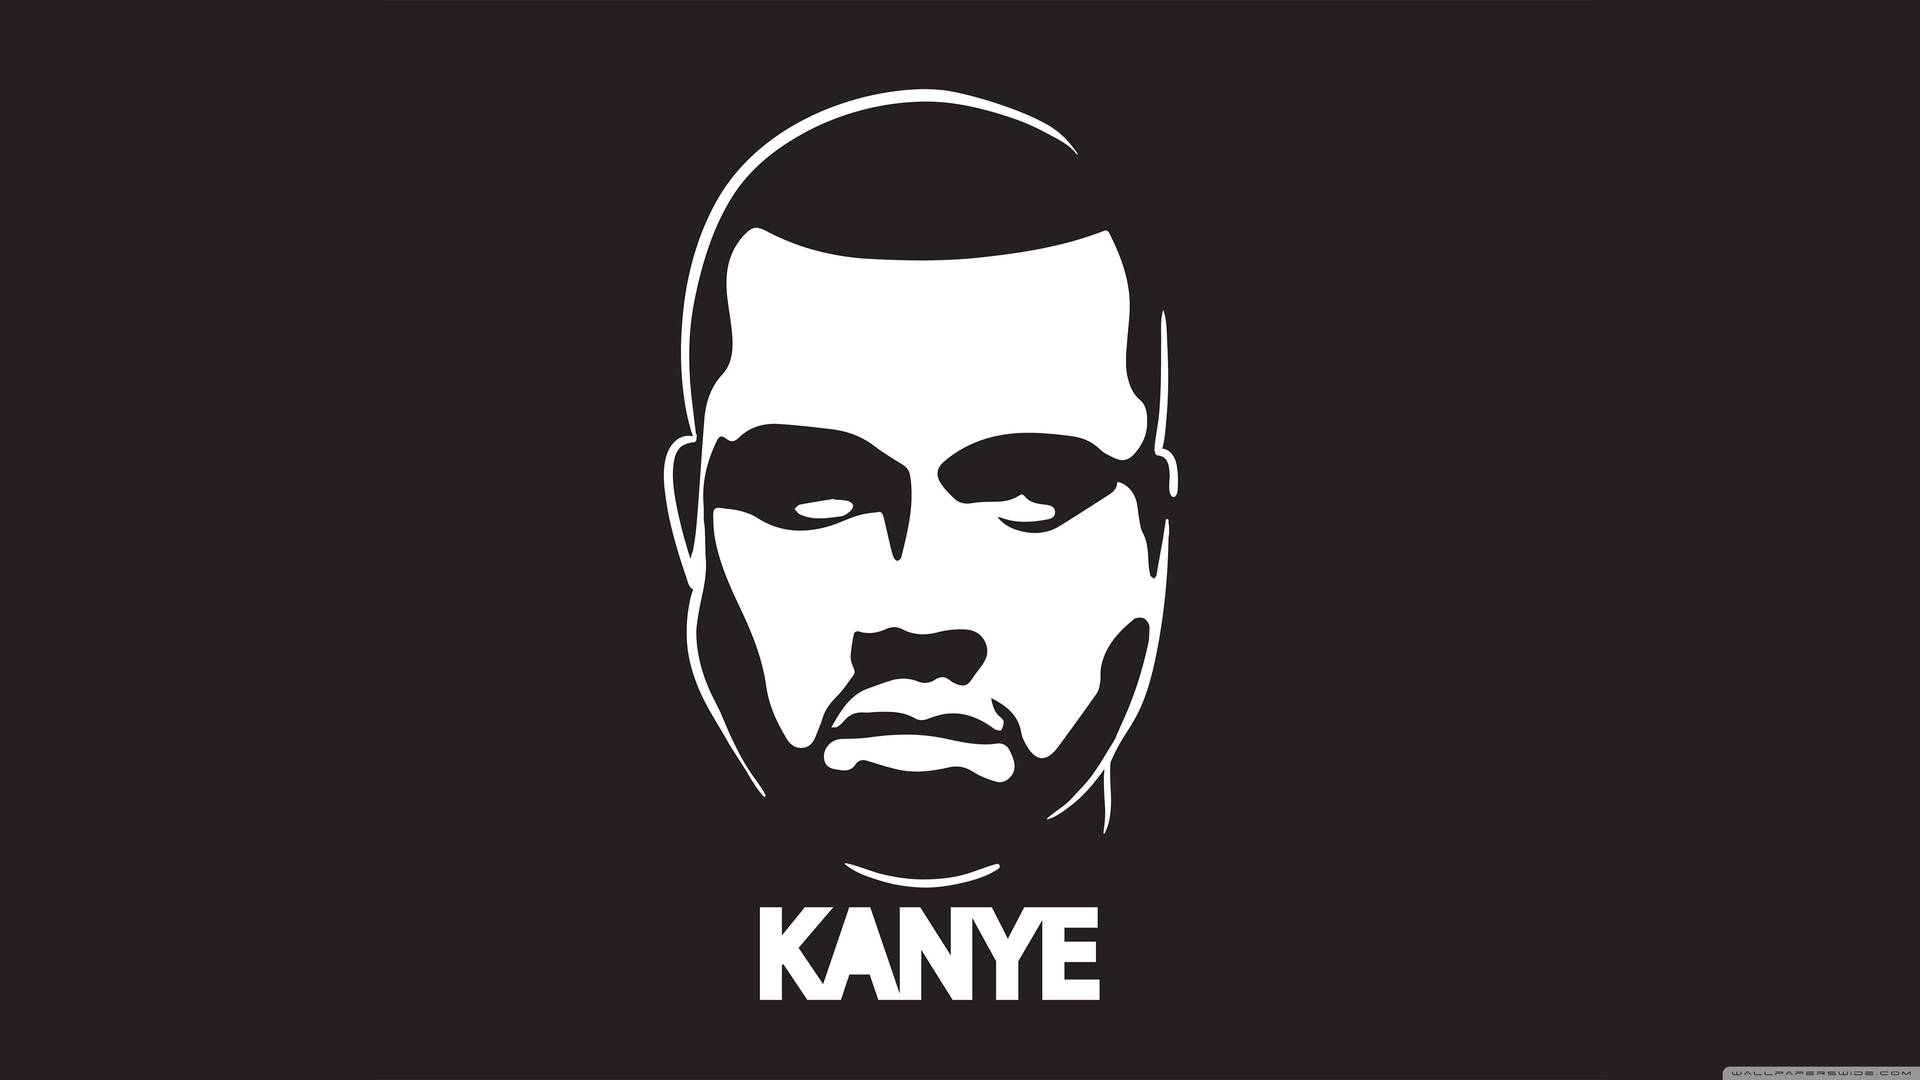 Kanye West Minimalistic Logo